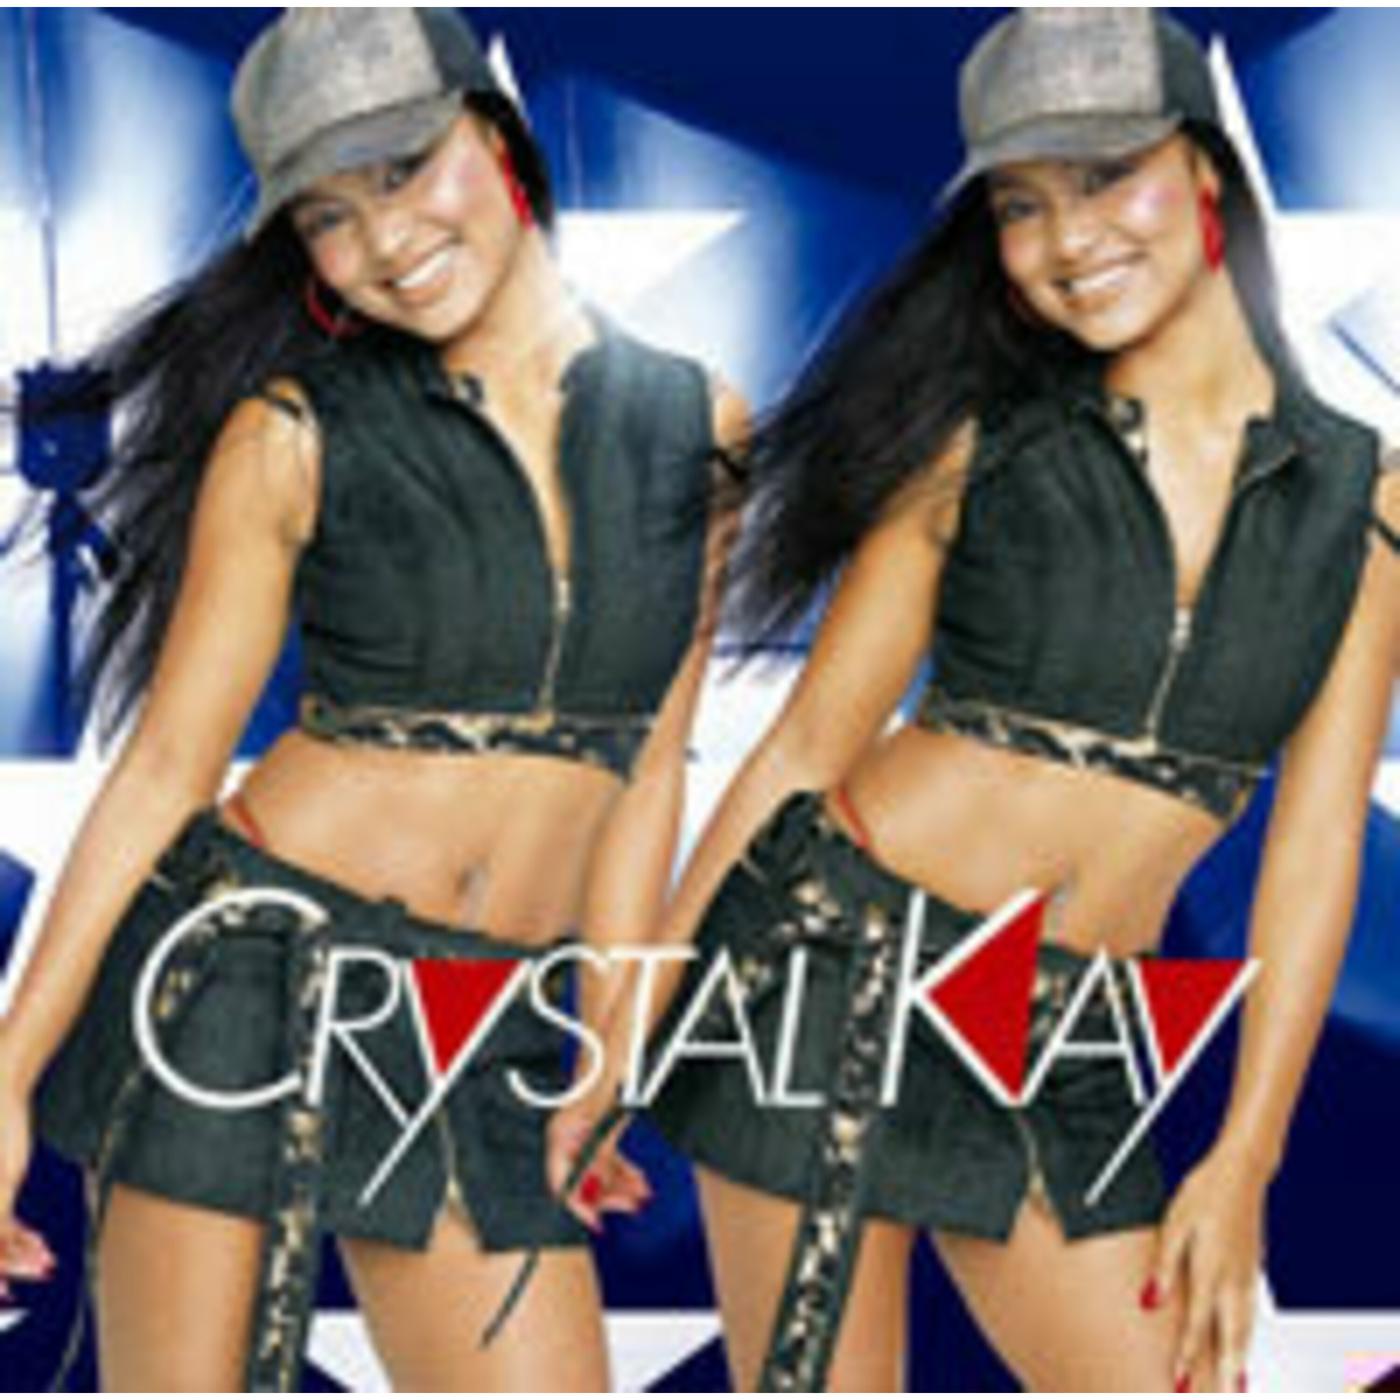 Crystal Kay - hard to say　acoustic version